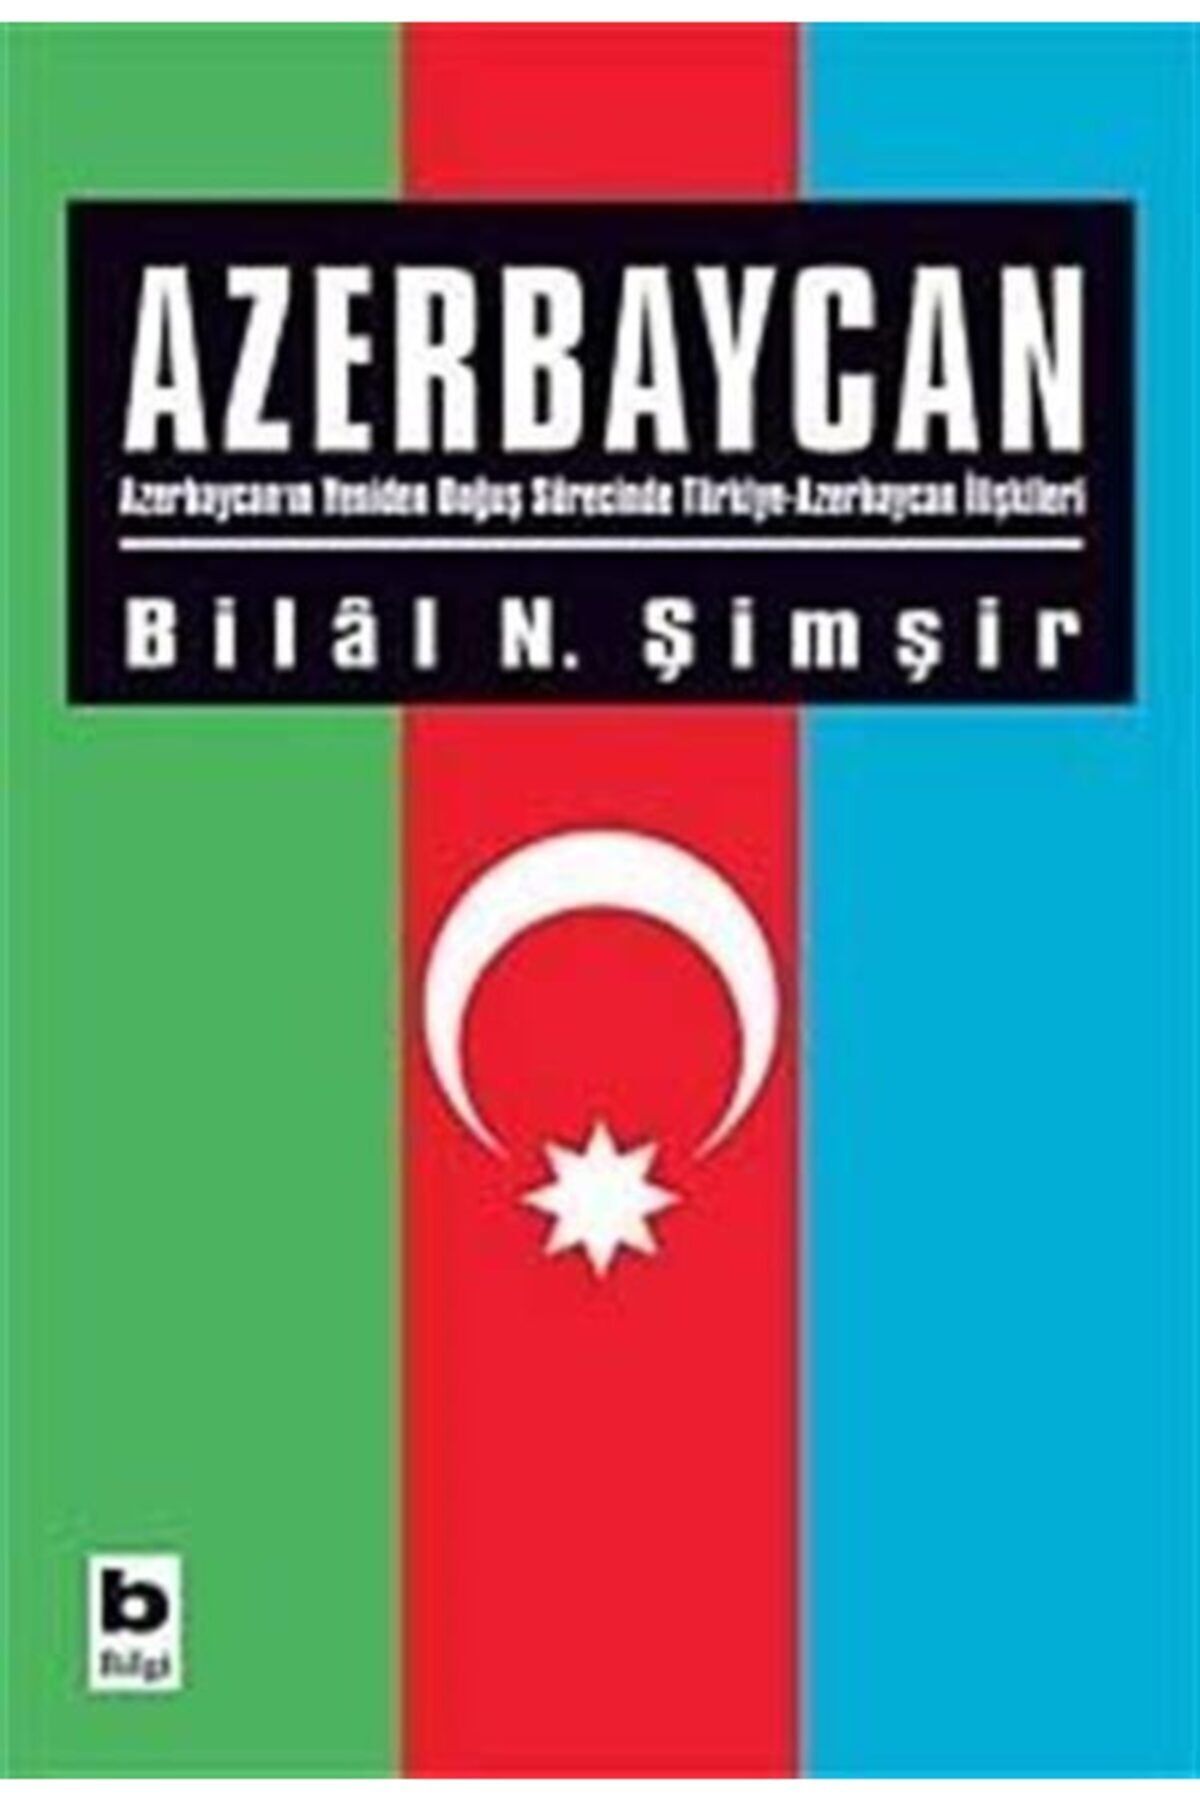 Bilgi Yayınları Azerbaycan & Azerbaycan'ın Yeniden Doğuş Sürecinde Türkiye-azerbaycan Ilişkileri